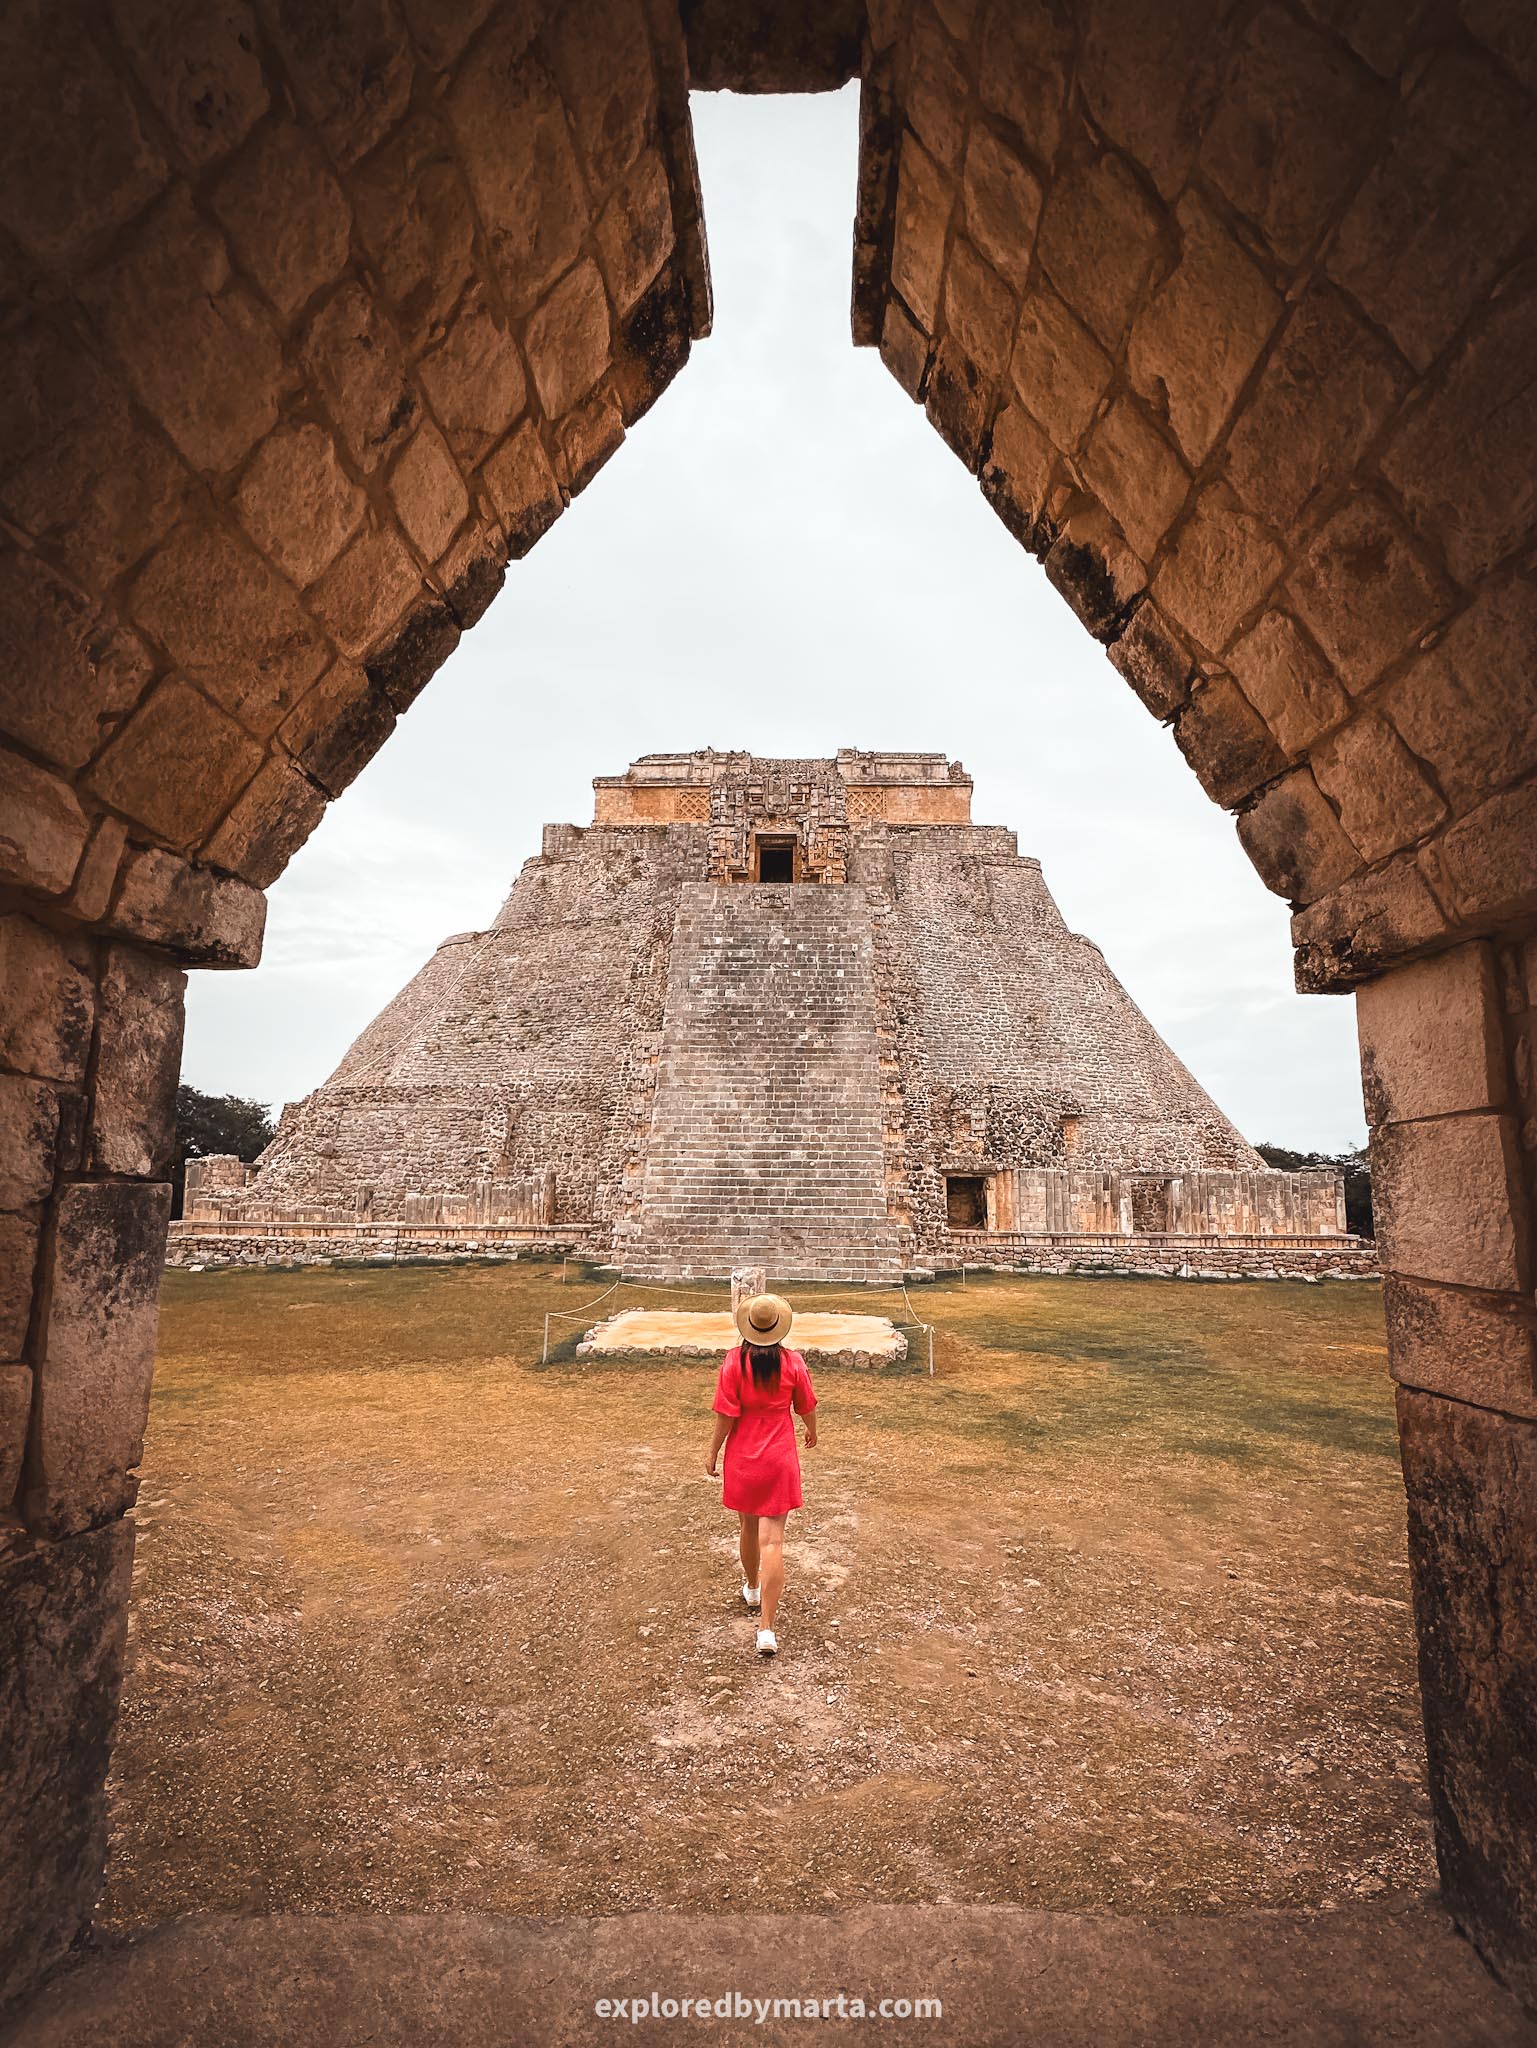 Yucatan peninsula, Mexico - Mayan pyramids and Mayan ruins around Yucatan - Uxmal archaeological zone in Ruta Puuc - Pyramid of the Magician